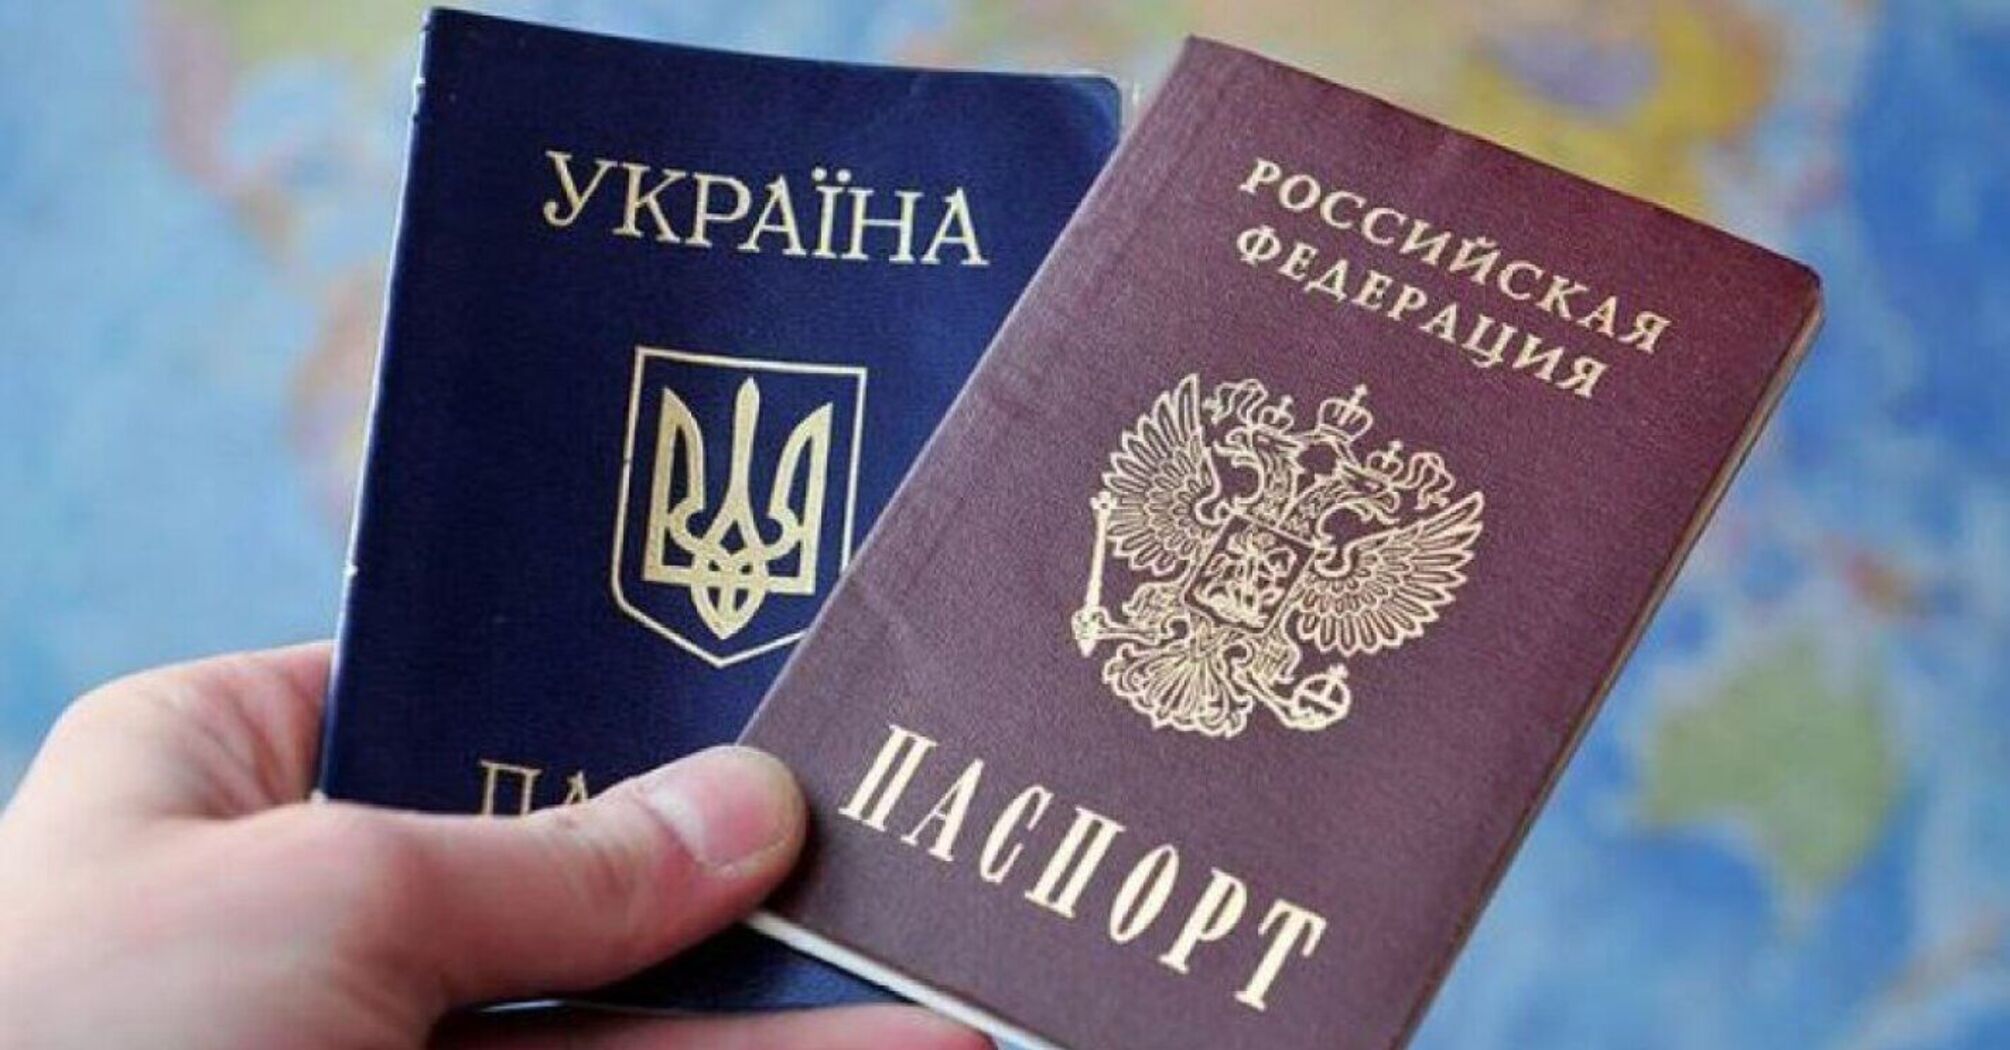 ГУР: рф не признает собственные паспорта, выданные на территории 'ЛДНР'